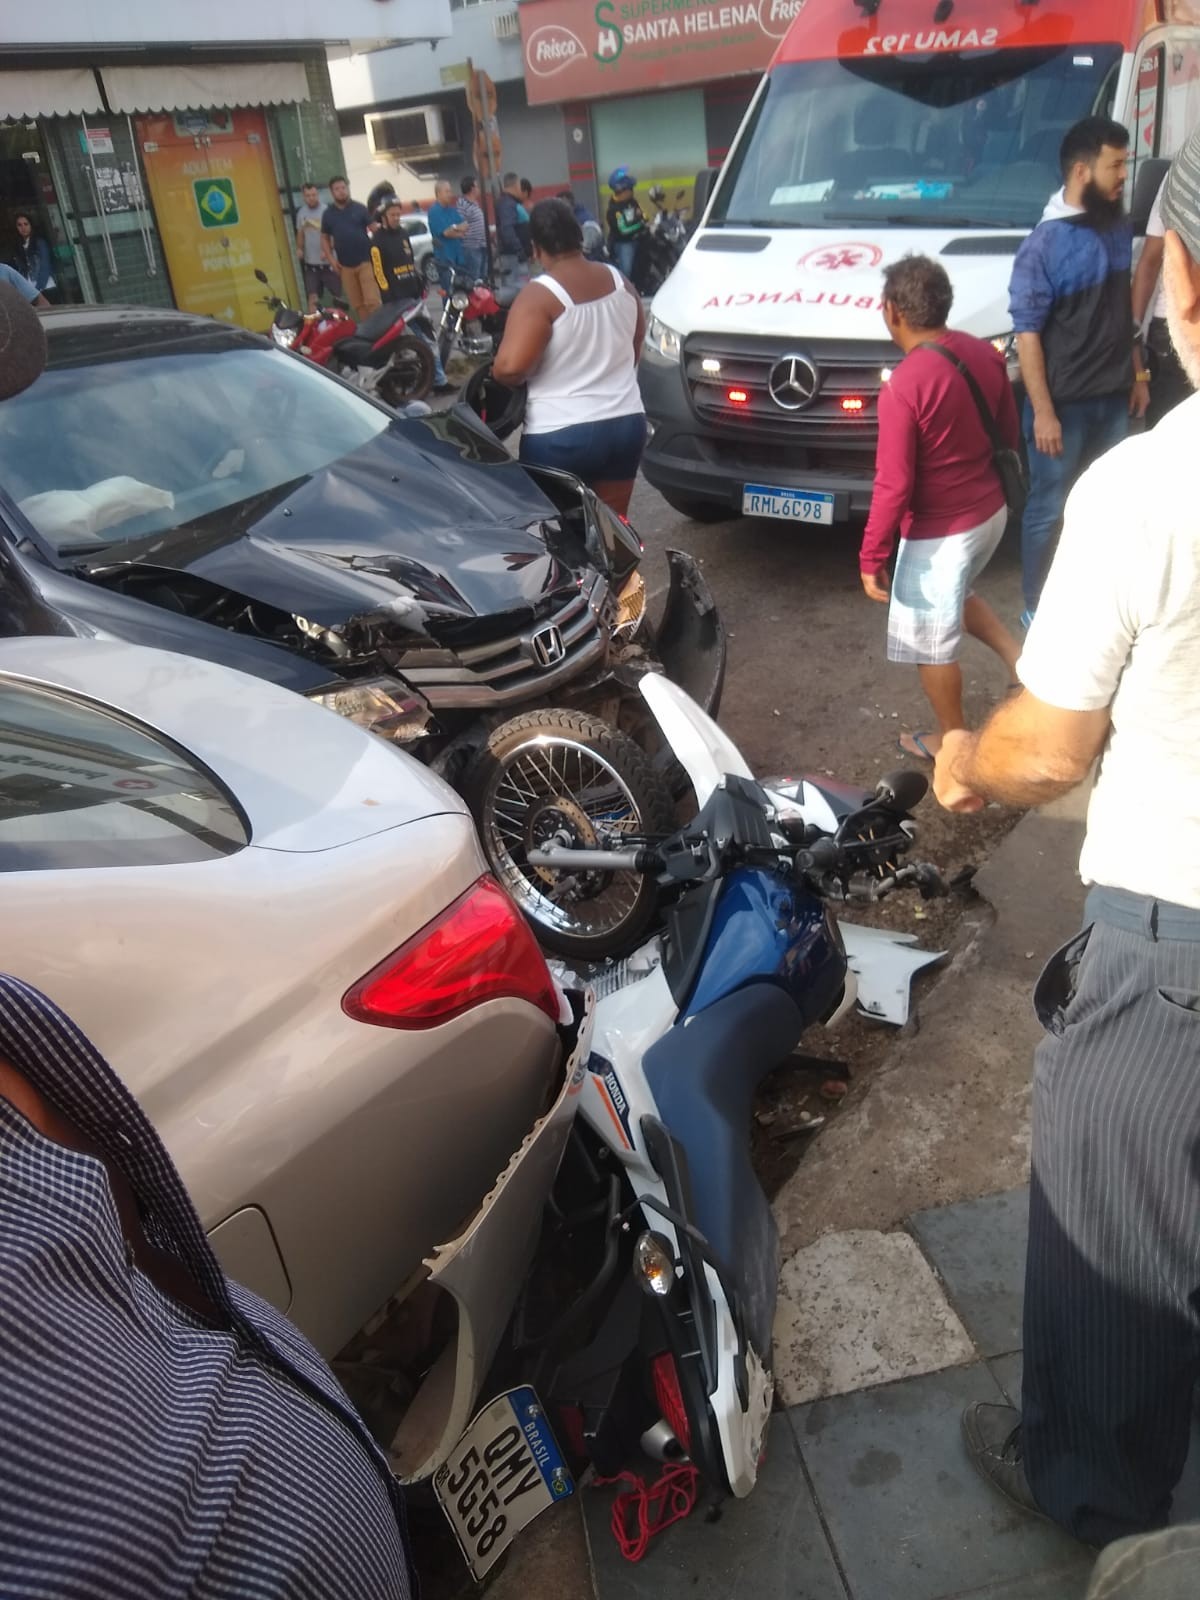 Motociclista fica ferido ao tentar cruzar avenida sem parar o veículo, em Ipatinga